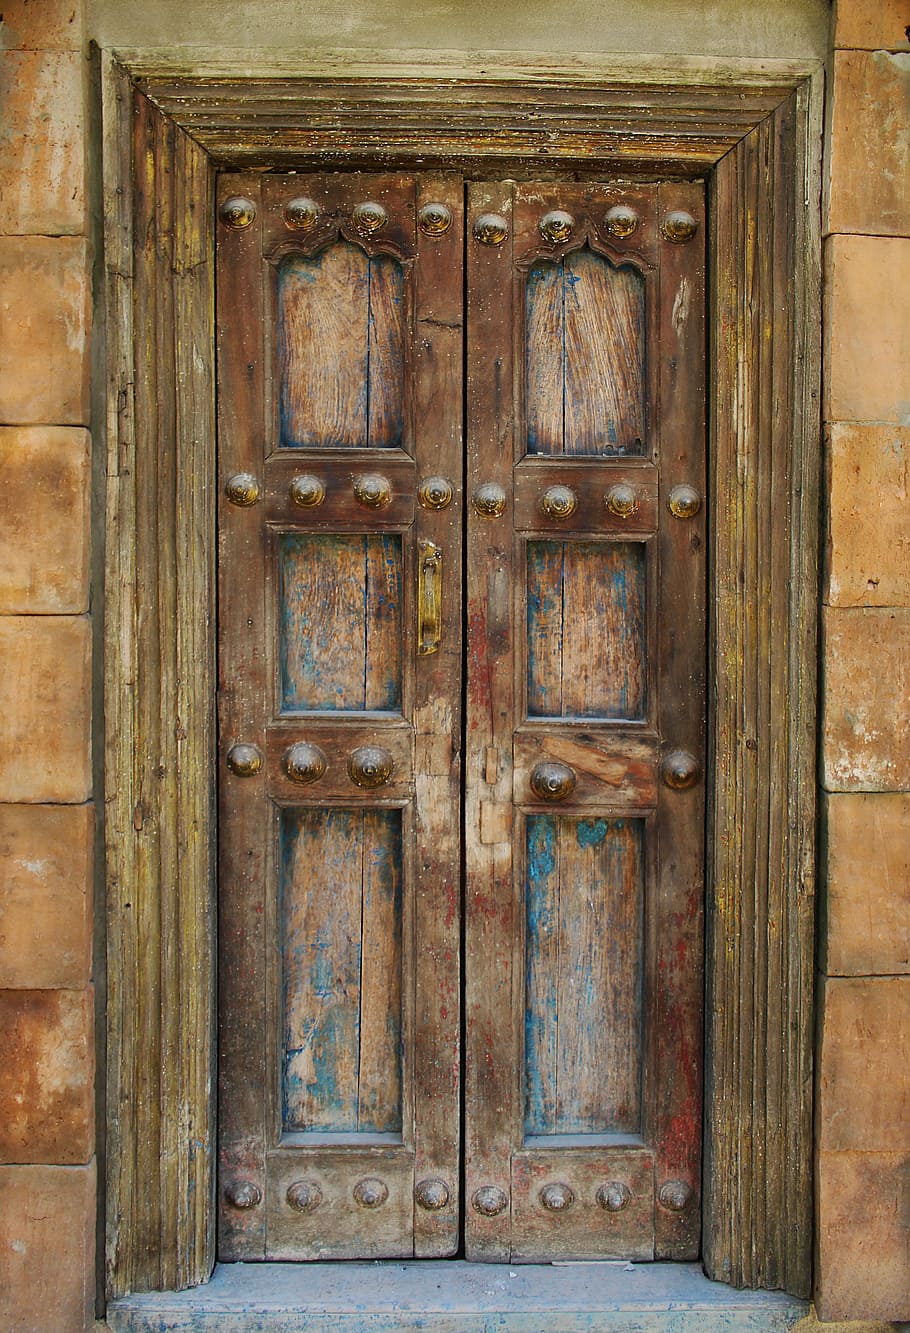 person, taking, brown, wooden, door, closed, entrance, doorway, interior, design